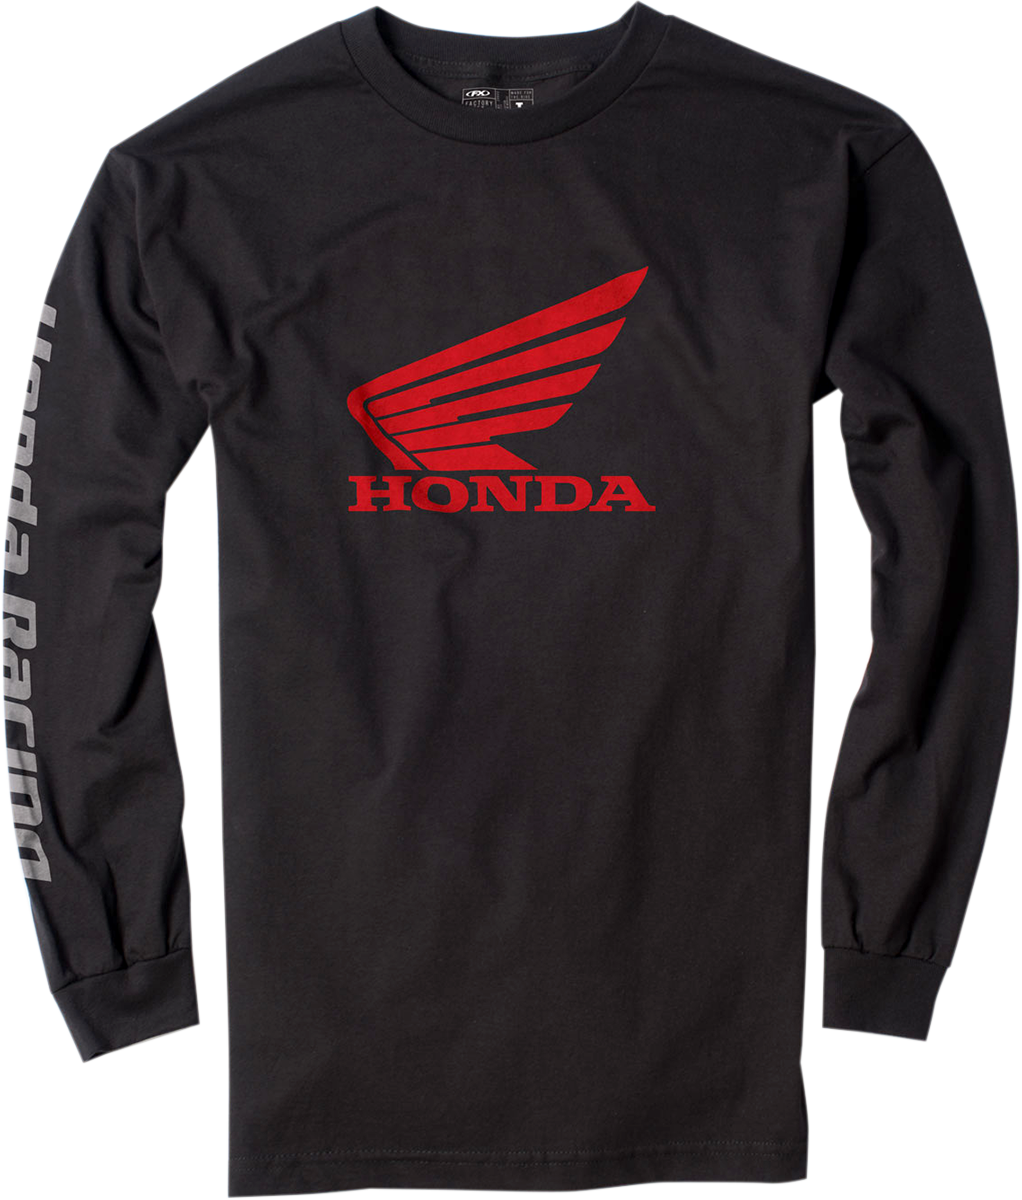 FACTORY EFFEX Honda Long-Sleeve T-Shirt - Black - Medium 17-87312